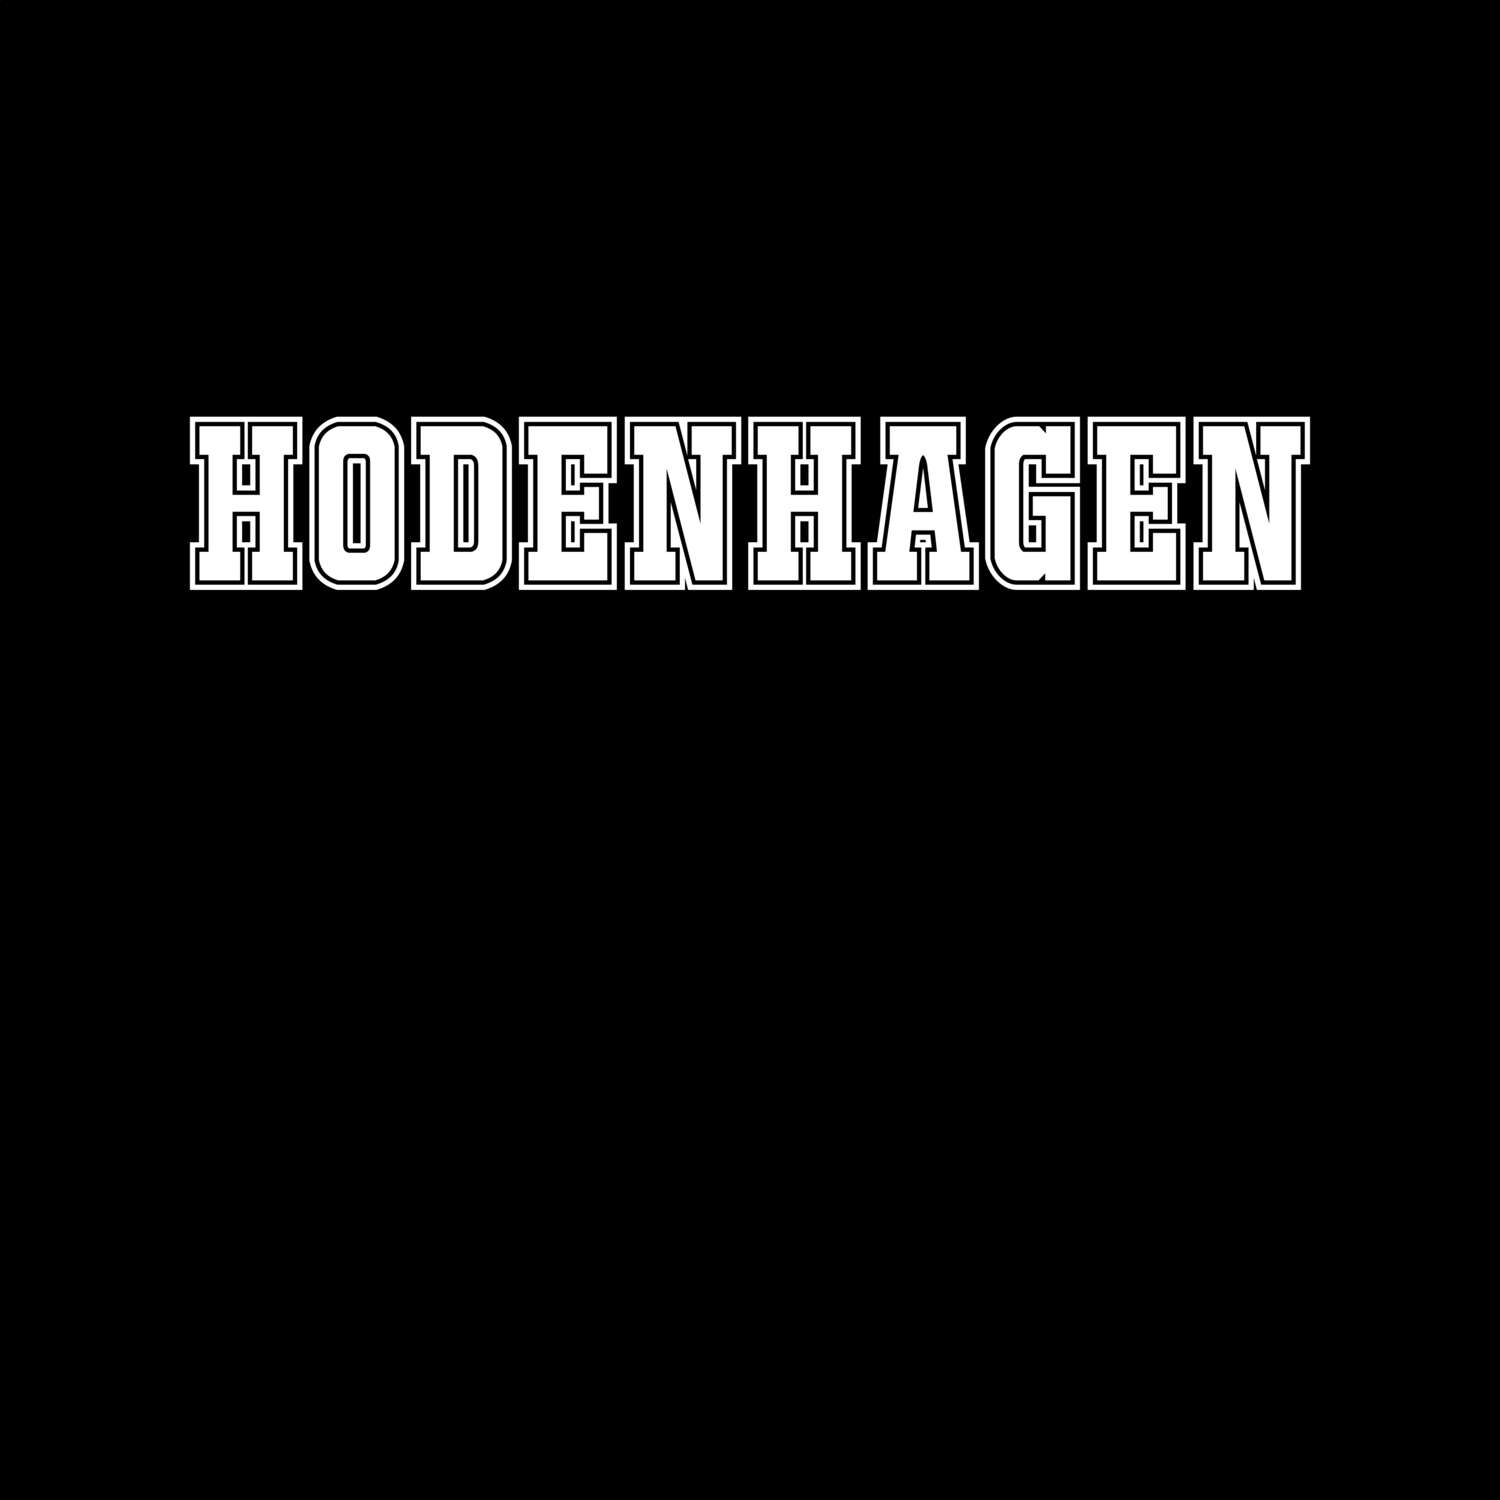 Hodenhagen T-Shirt »Classic«